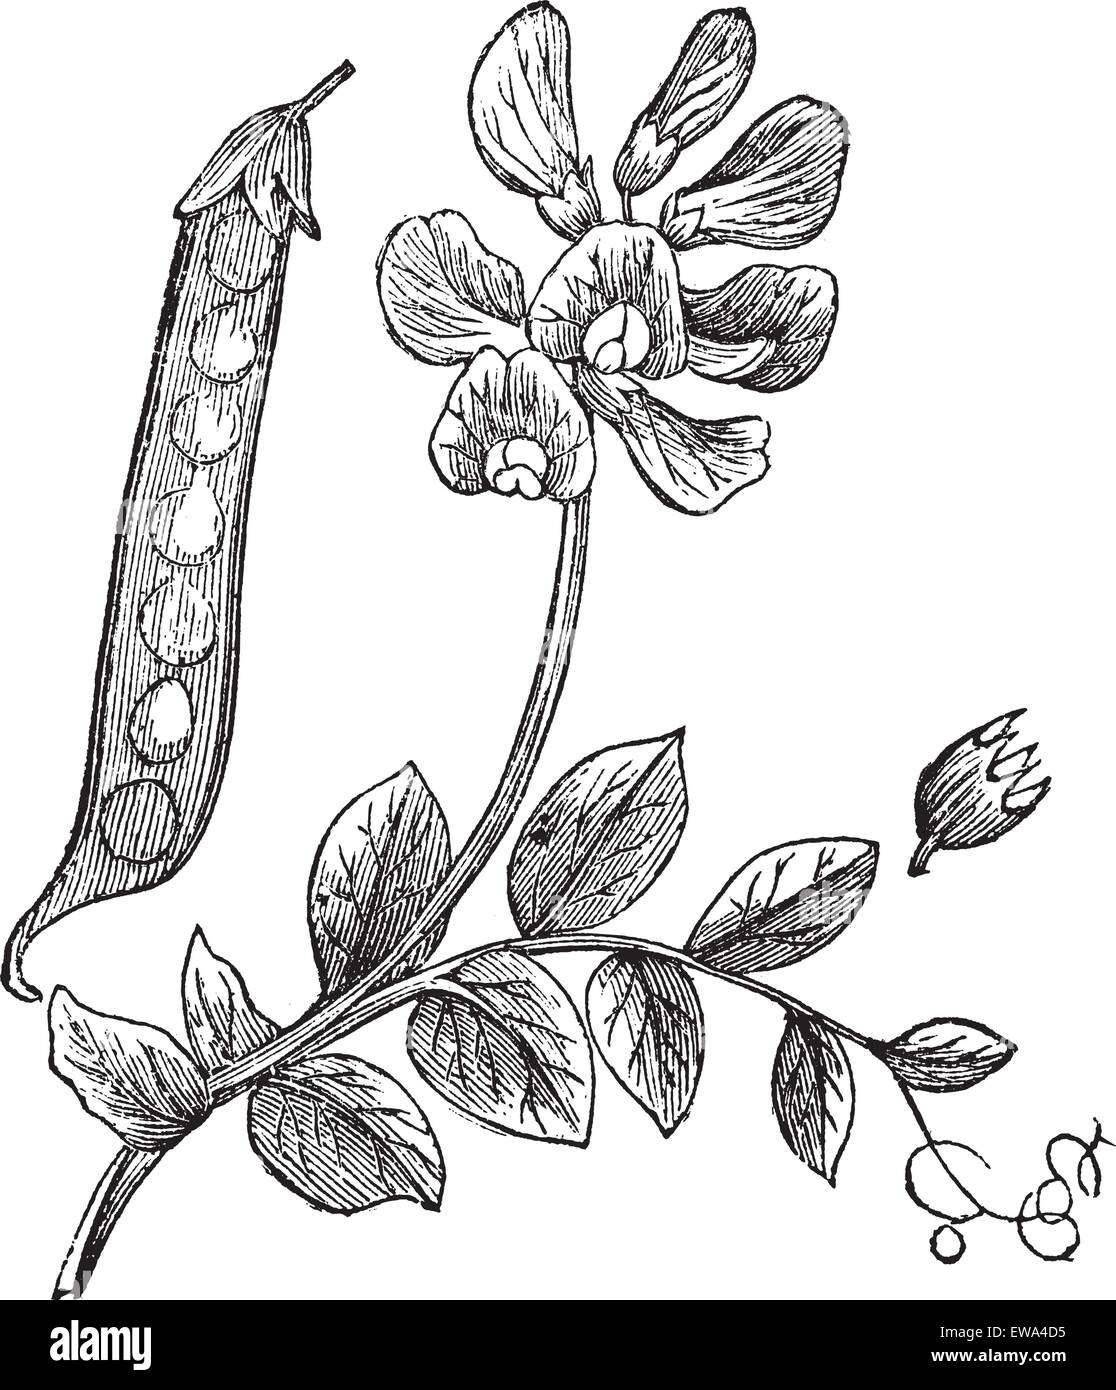 Erbsen oder Pisum Sativum, Vintage graviert Abbildung zeigt Pod (links) und Blume (oben Mitte). Trousset Enzyklopädie (1886- Stock Vektor